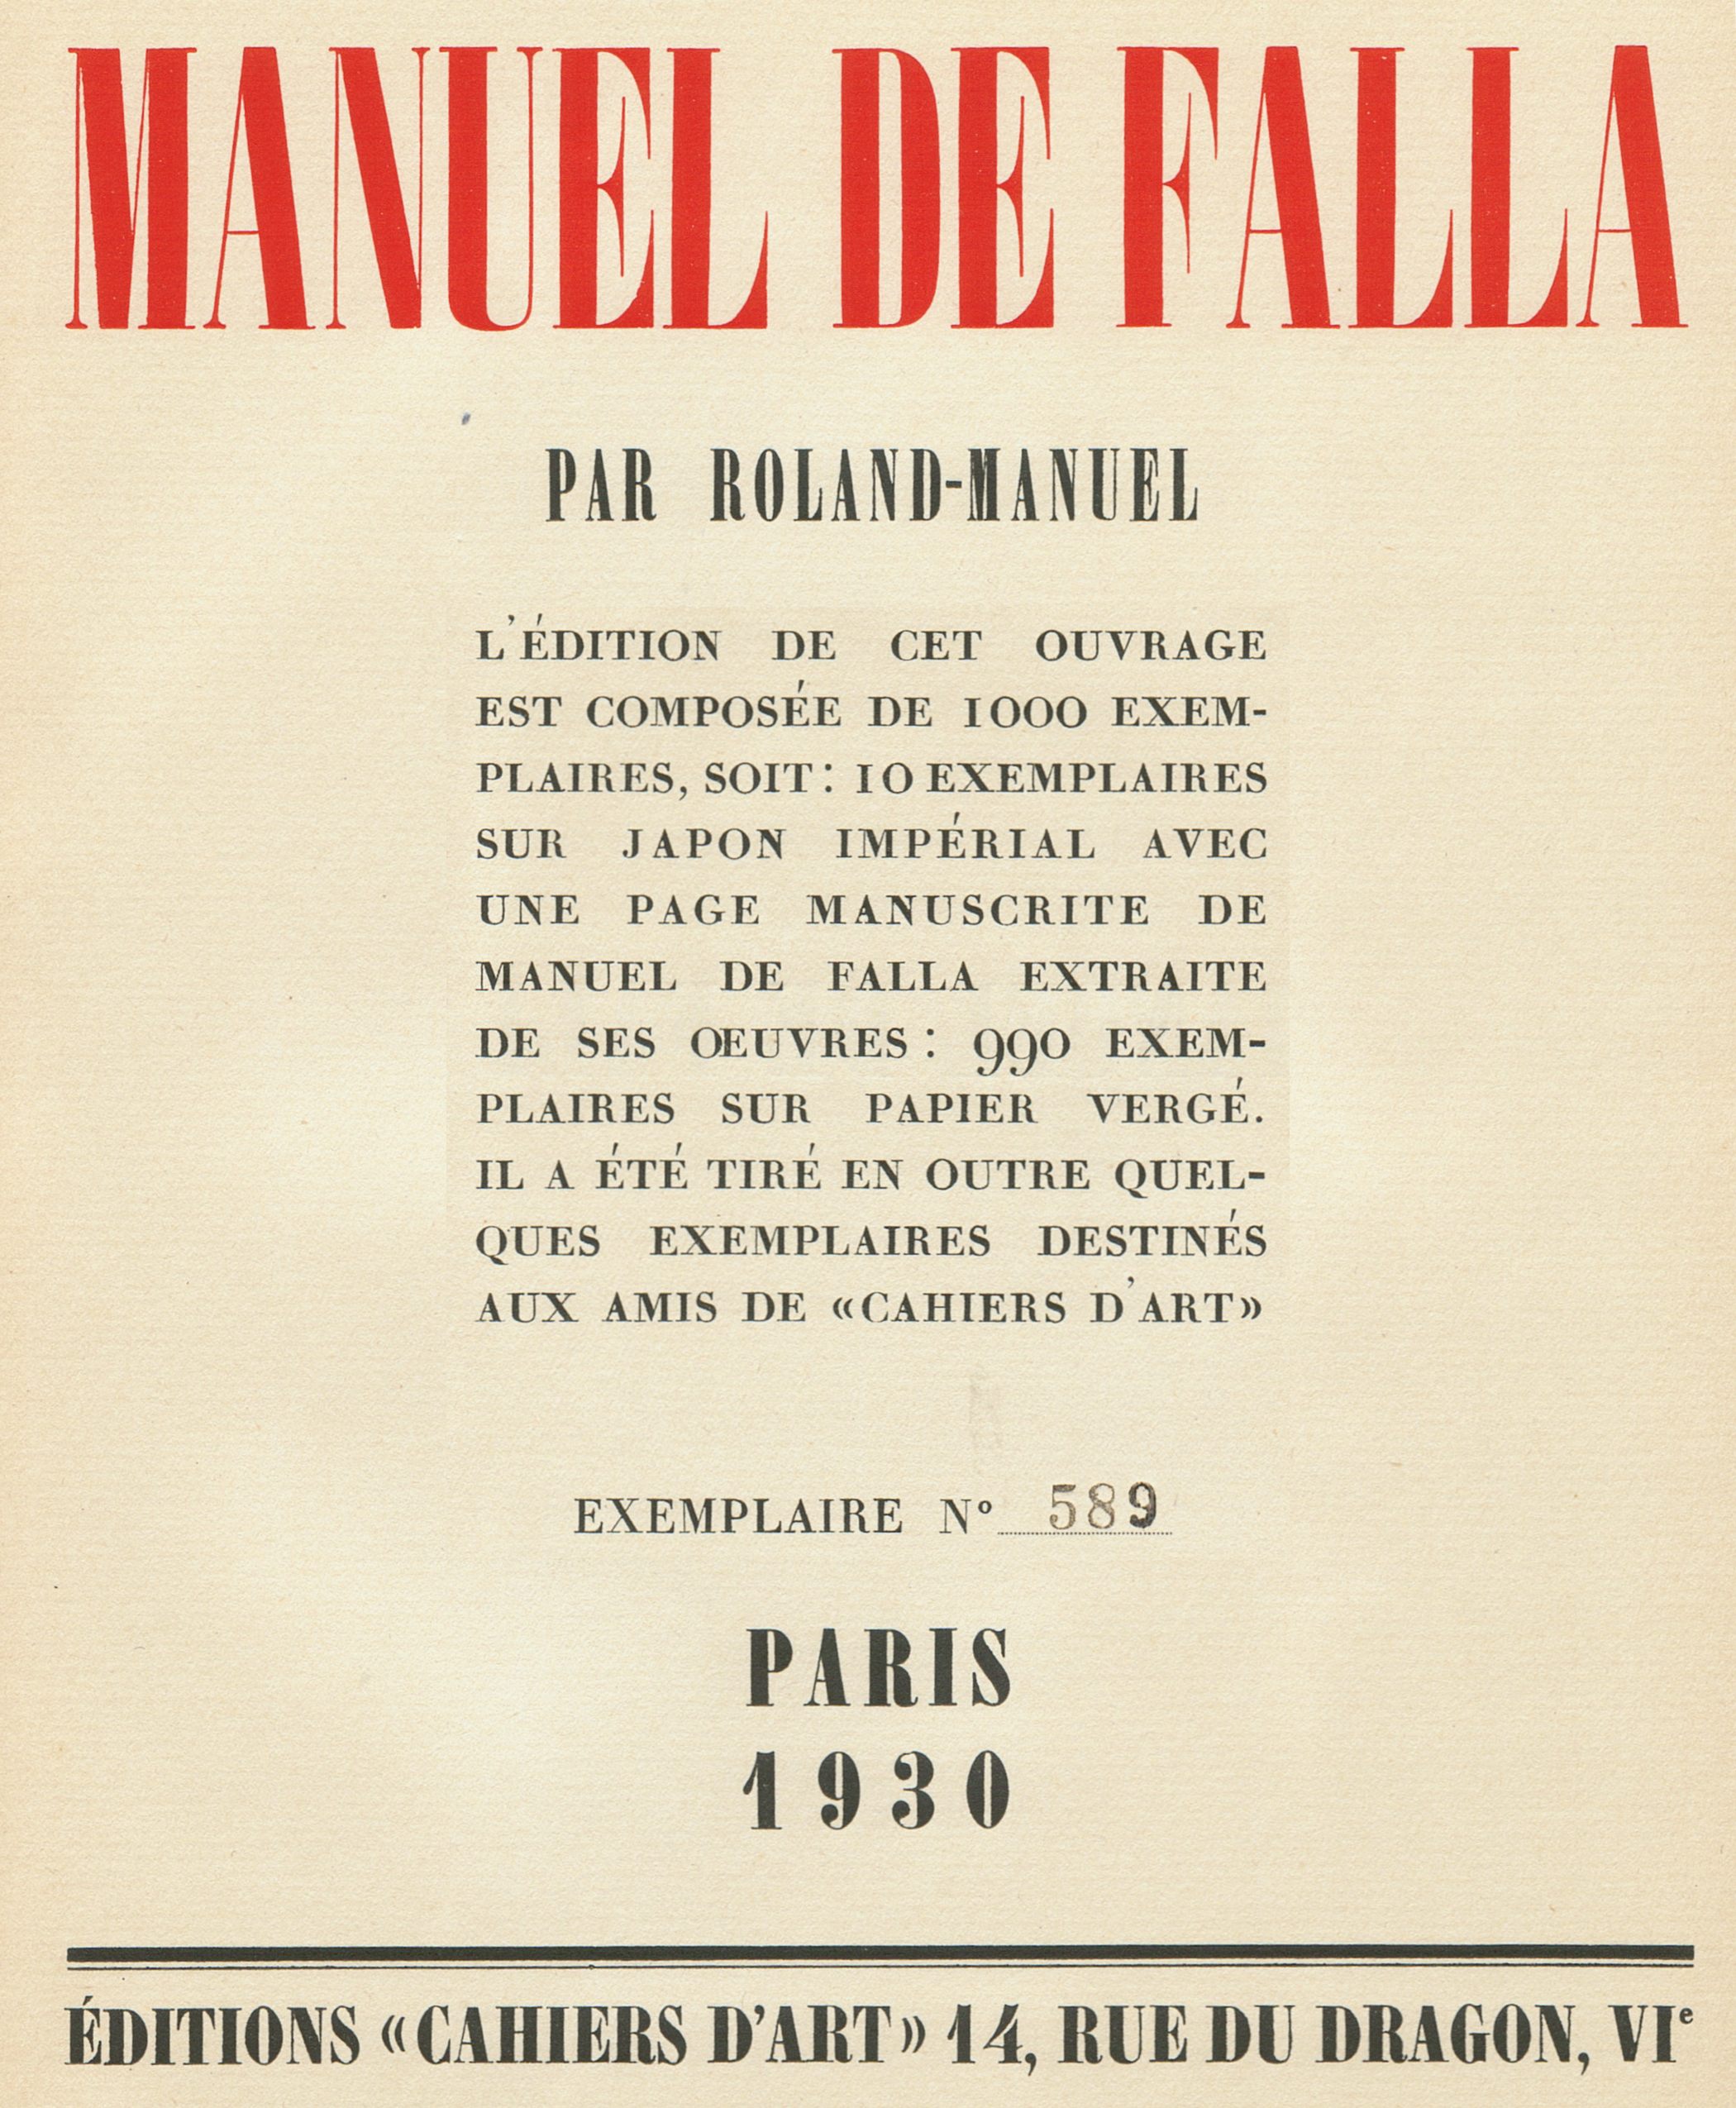 Manuel de FALLA, Montage page titre de l'ouvrage de Roland_Manuel, «MANUEL DE FALLA», 1ère édition Paris 1930, No 589 de 990, cliquer pour une vue agrandie